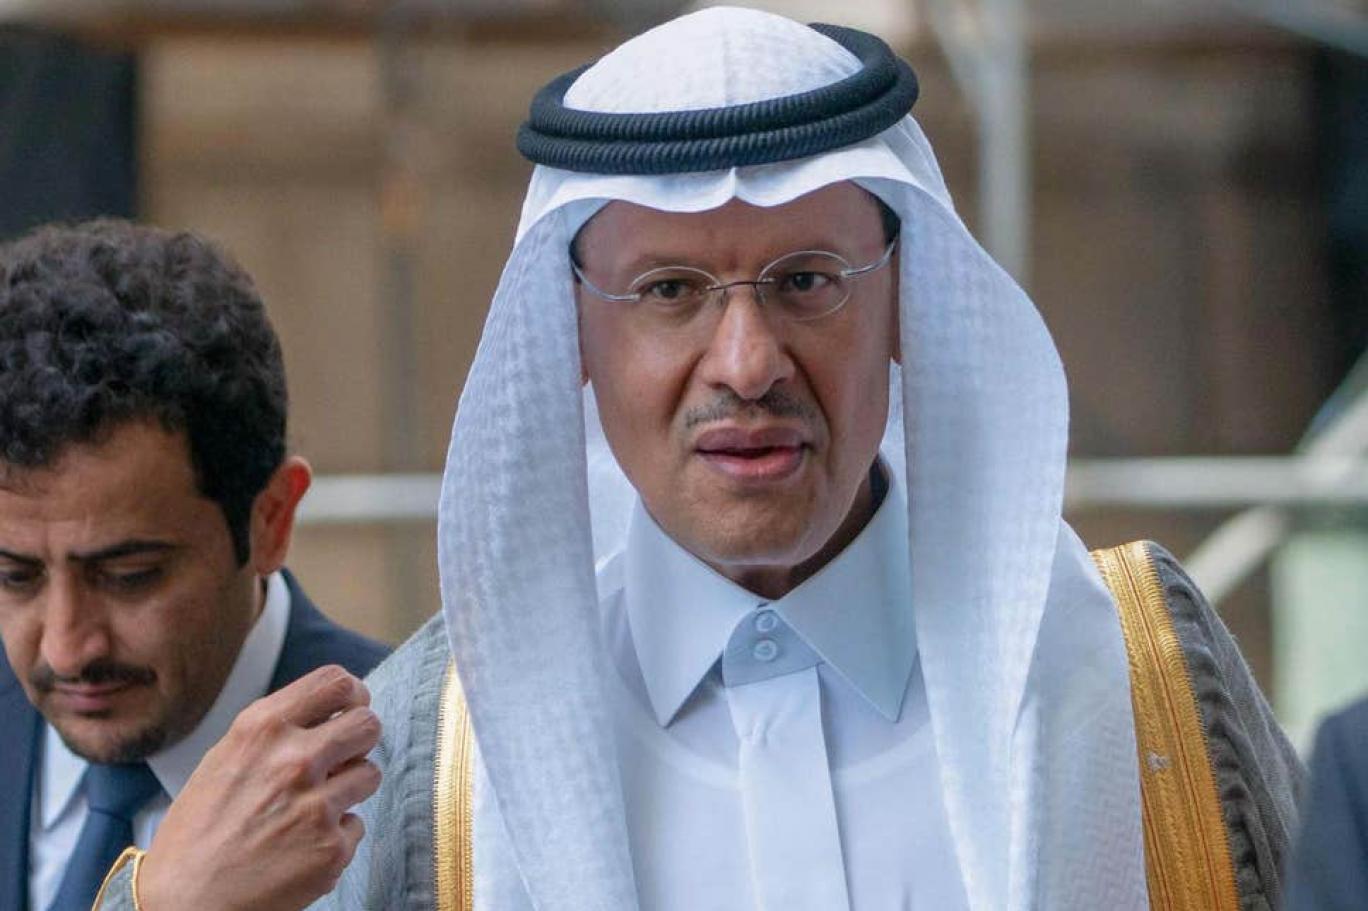 عبد العزيز بن سلمان وزيرا للطاقة في السعودية وإعفاء خالد الفالح من